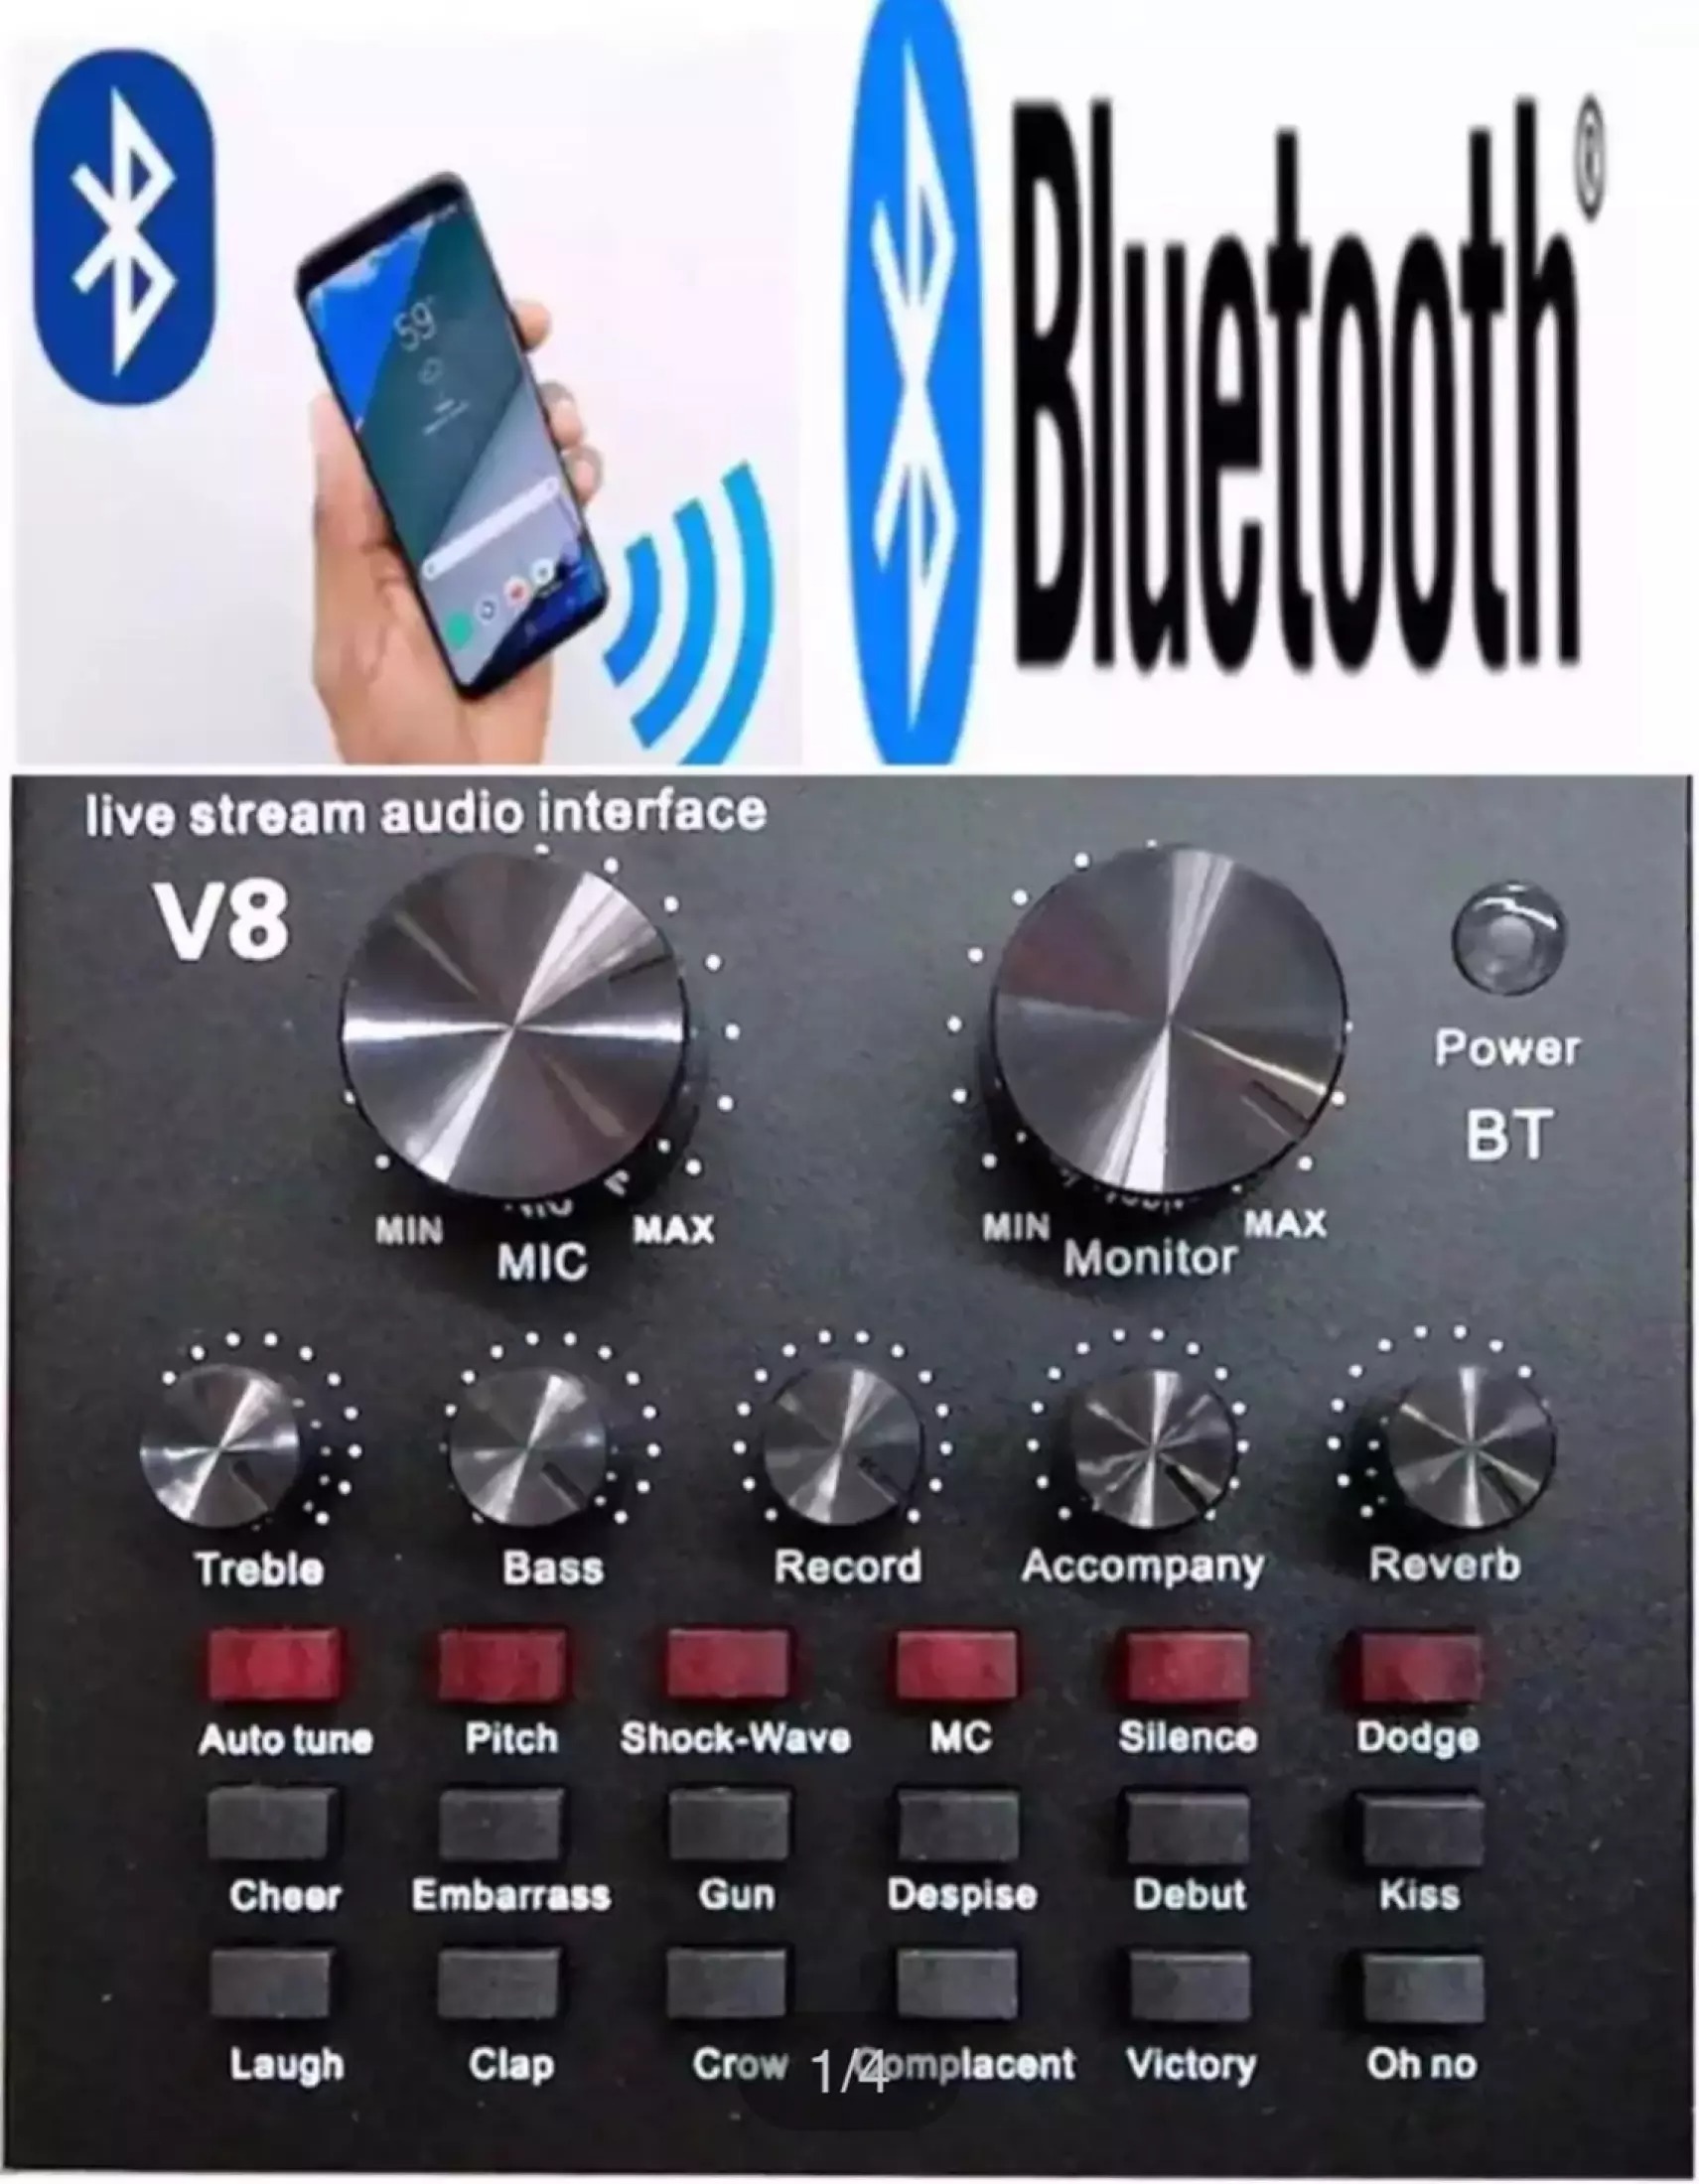 ภาพประกอบคำอธิบาย 【ส่งเร็วร้านไทย】2021 ล่าสุด V8/V8S /V8plus BT USB เสียงชุดหูฟังไมโครโฟน Webcast สดการ์ดเสียงสำหรับโทรศัพท์ มี Blth การ์ดเสียงที่มีฟังก์ชั่นหลากหลาย เอฟเฟ